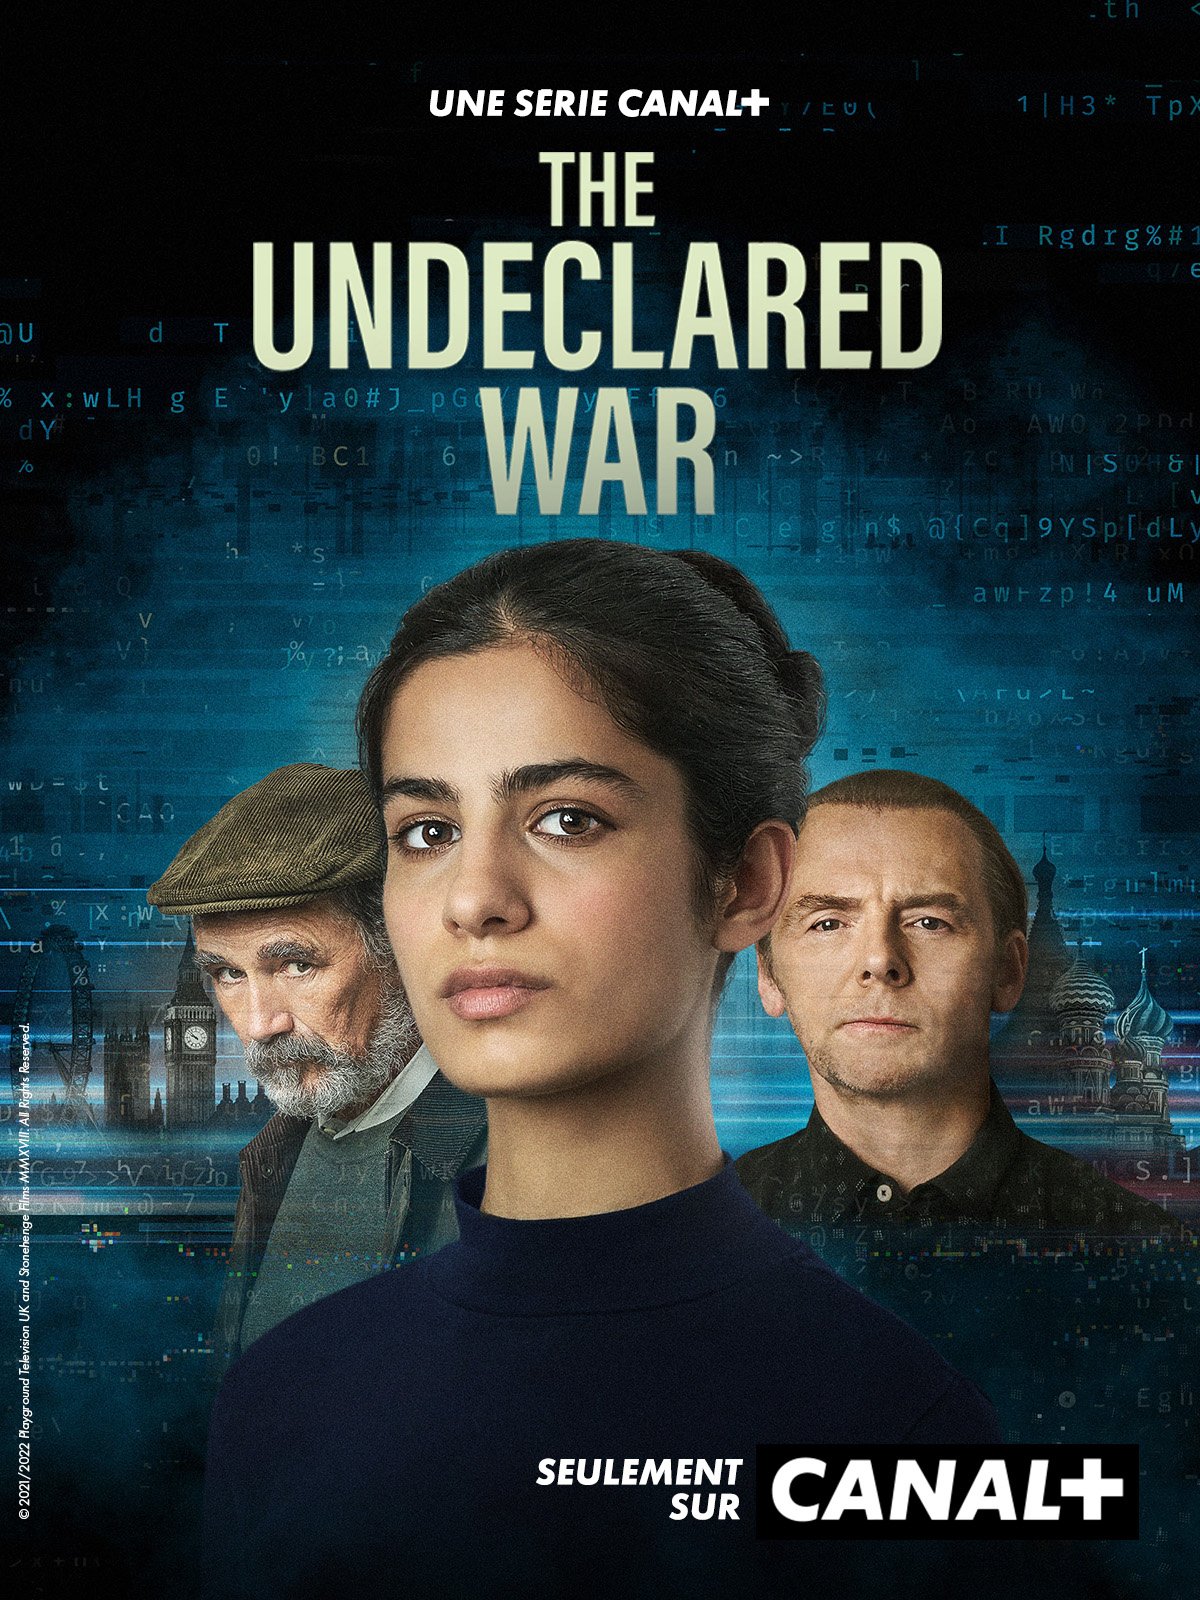 The Undeclared War - Saison 1